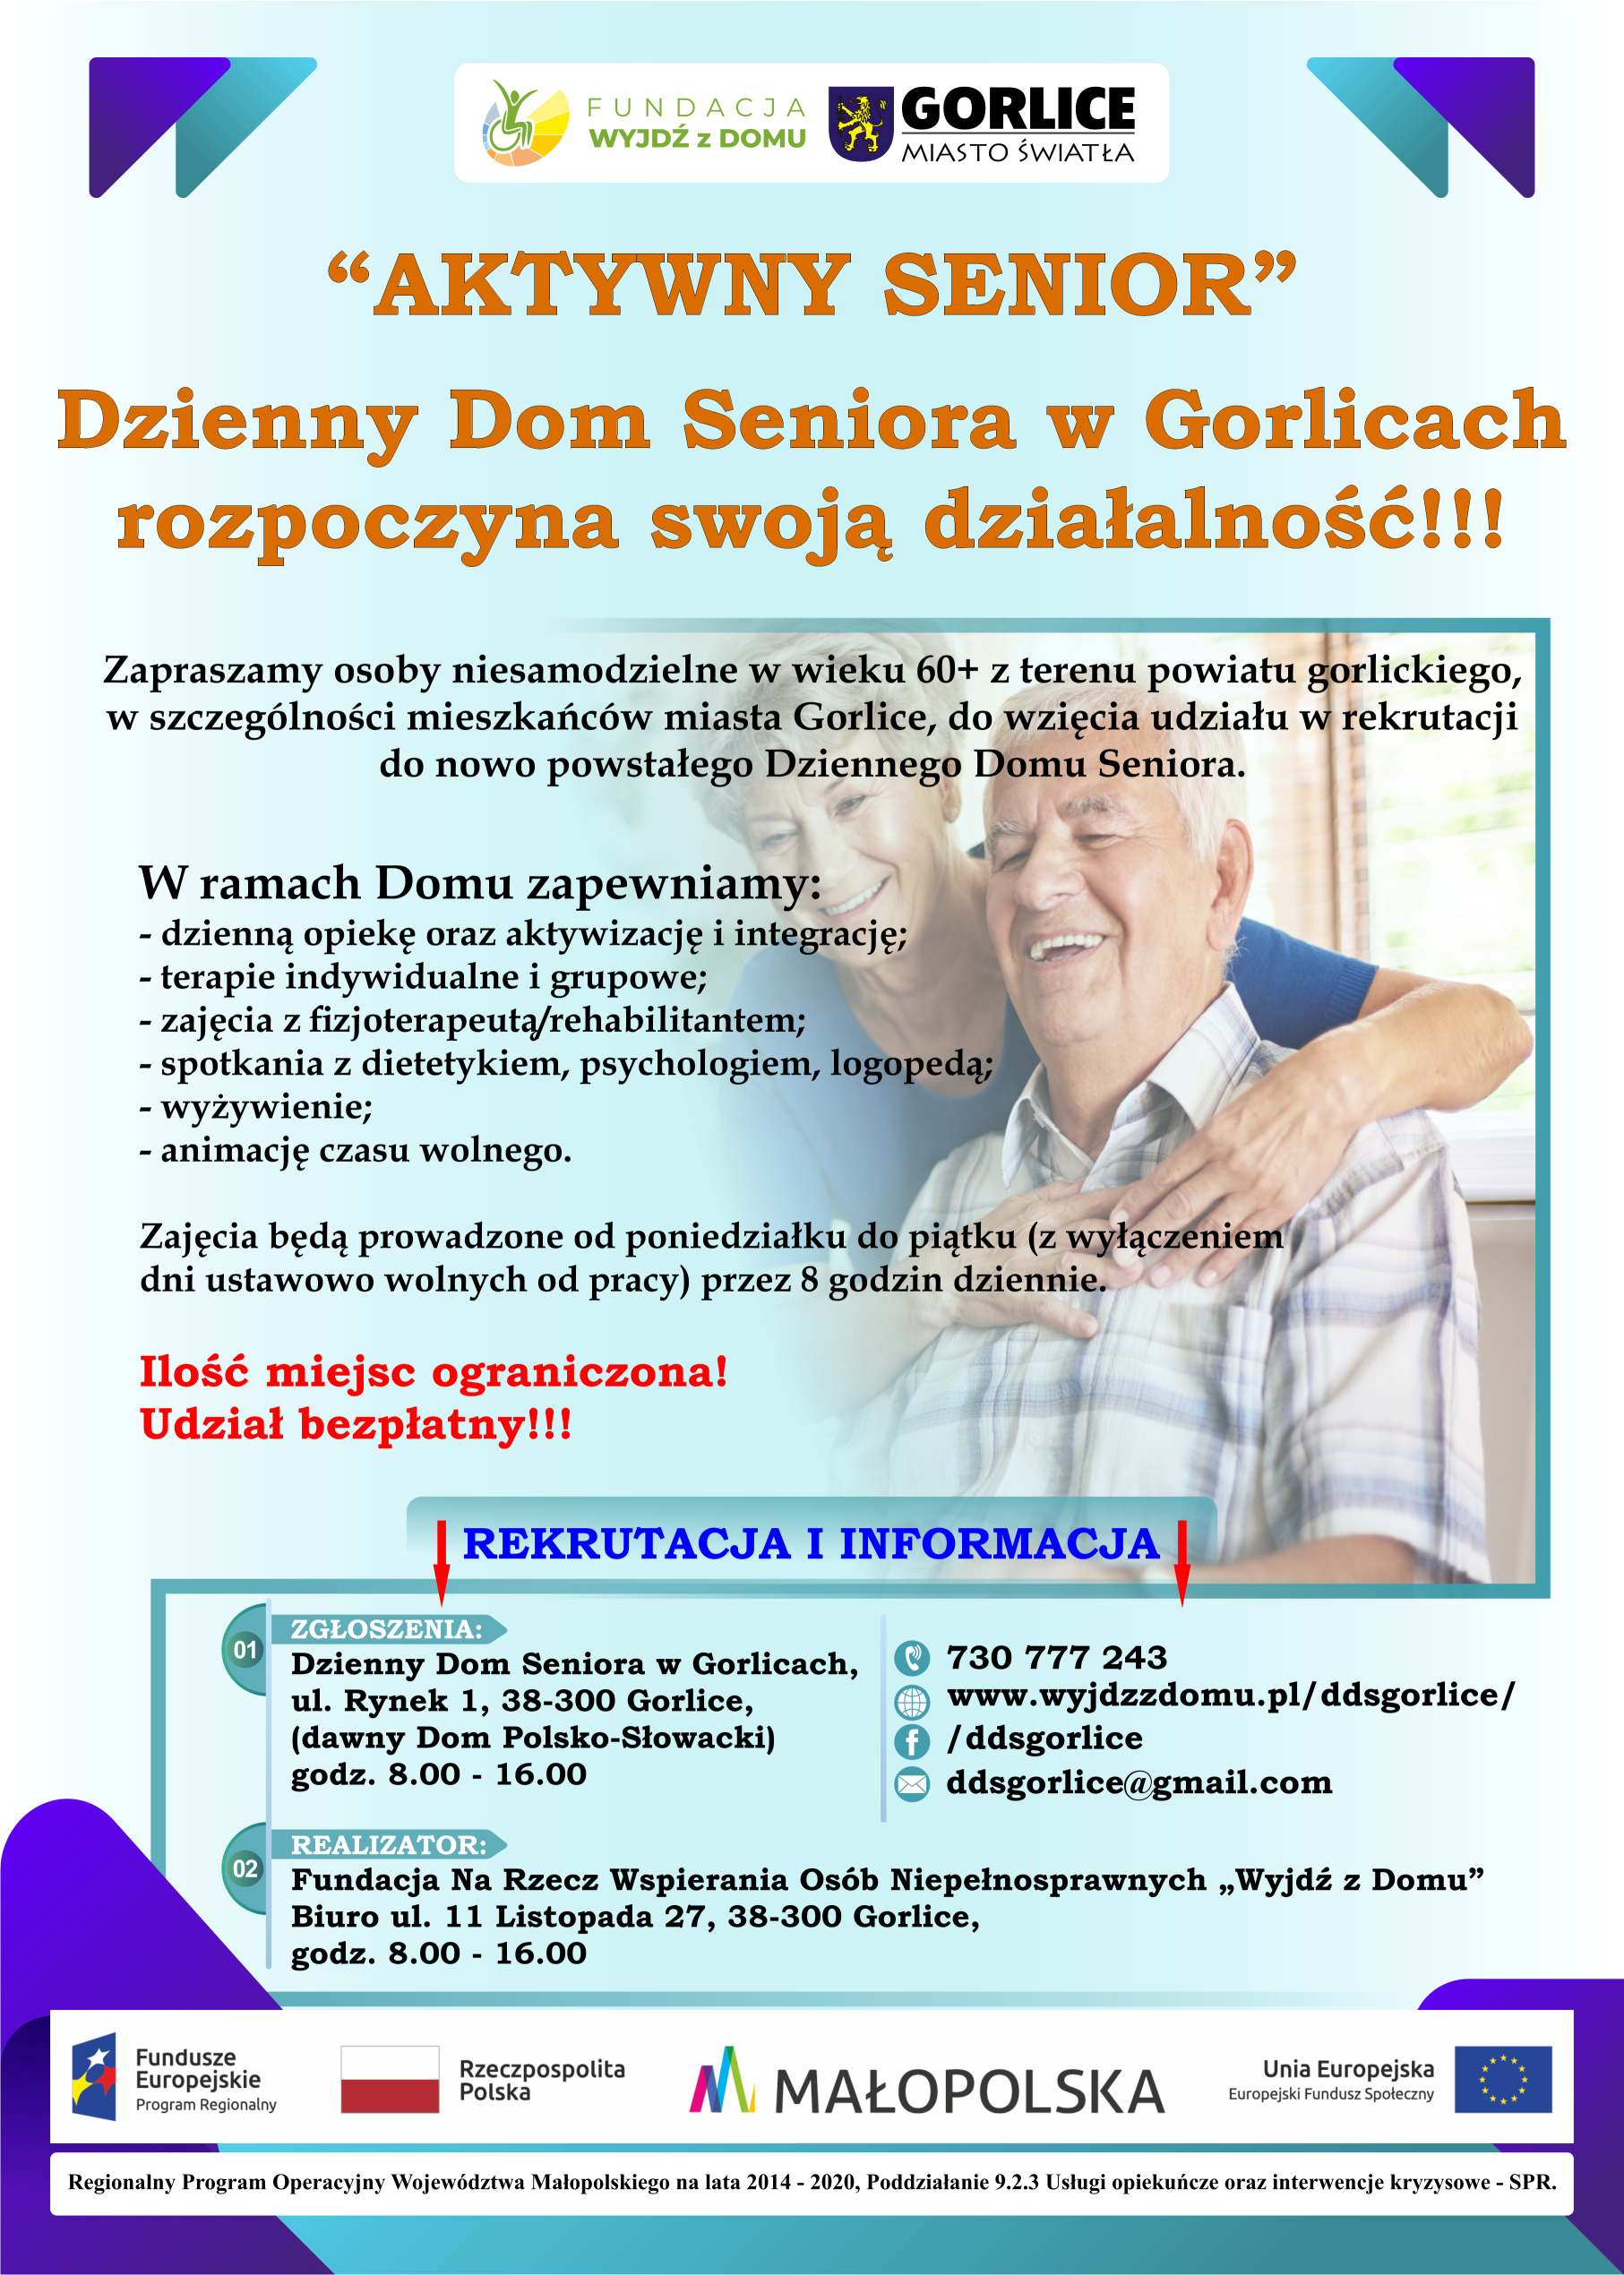 Ogłoszenie o rekrutacji do Dziennego Domu Seniora w Gorlicach